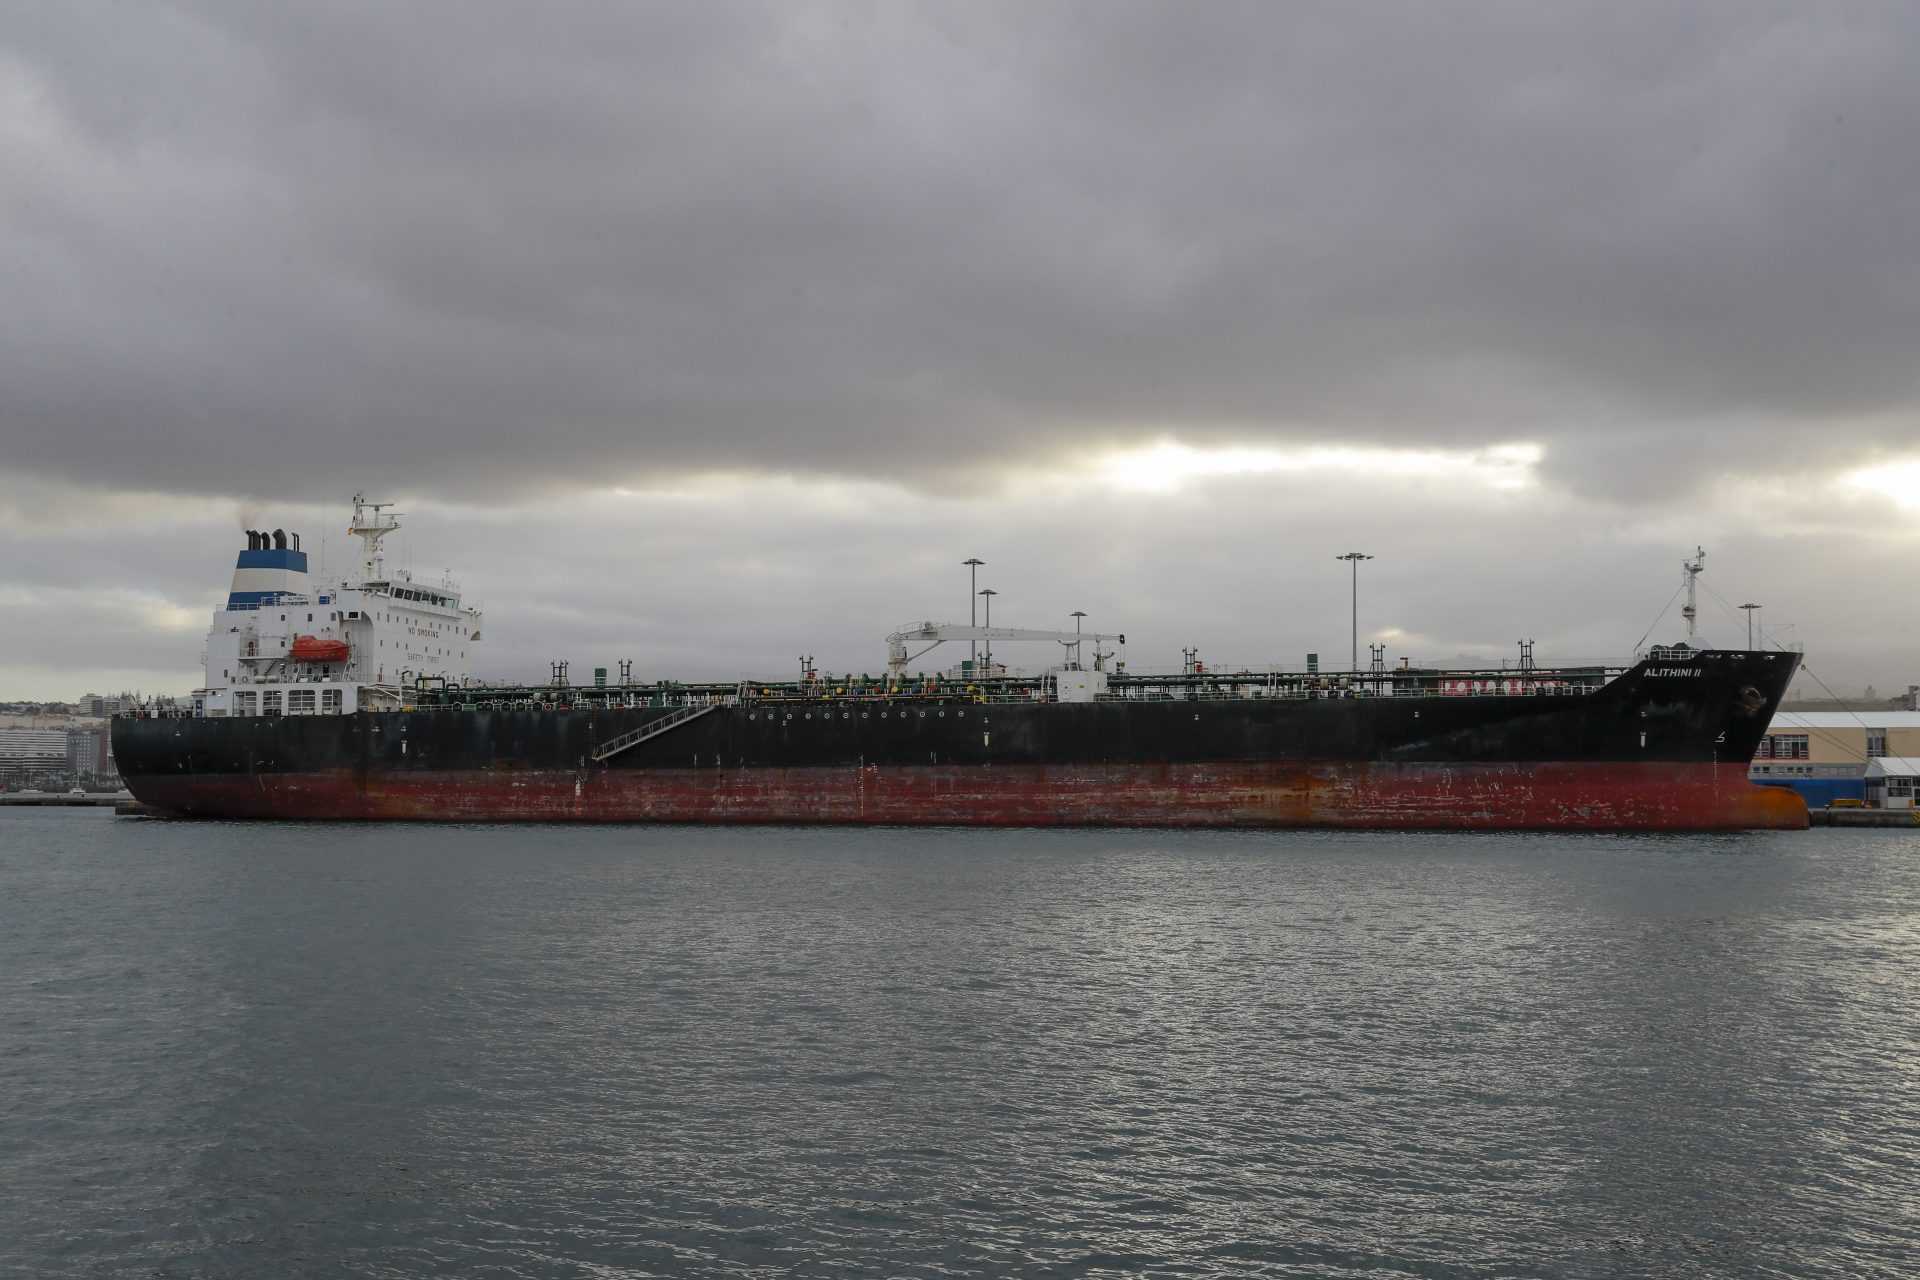 El petrolero Alithini II, donde viajaron los tres migrantes desde Nigeria, atracado en el puerto de Las Palmas de Gran Canaria.